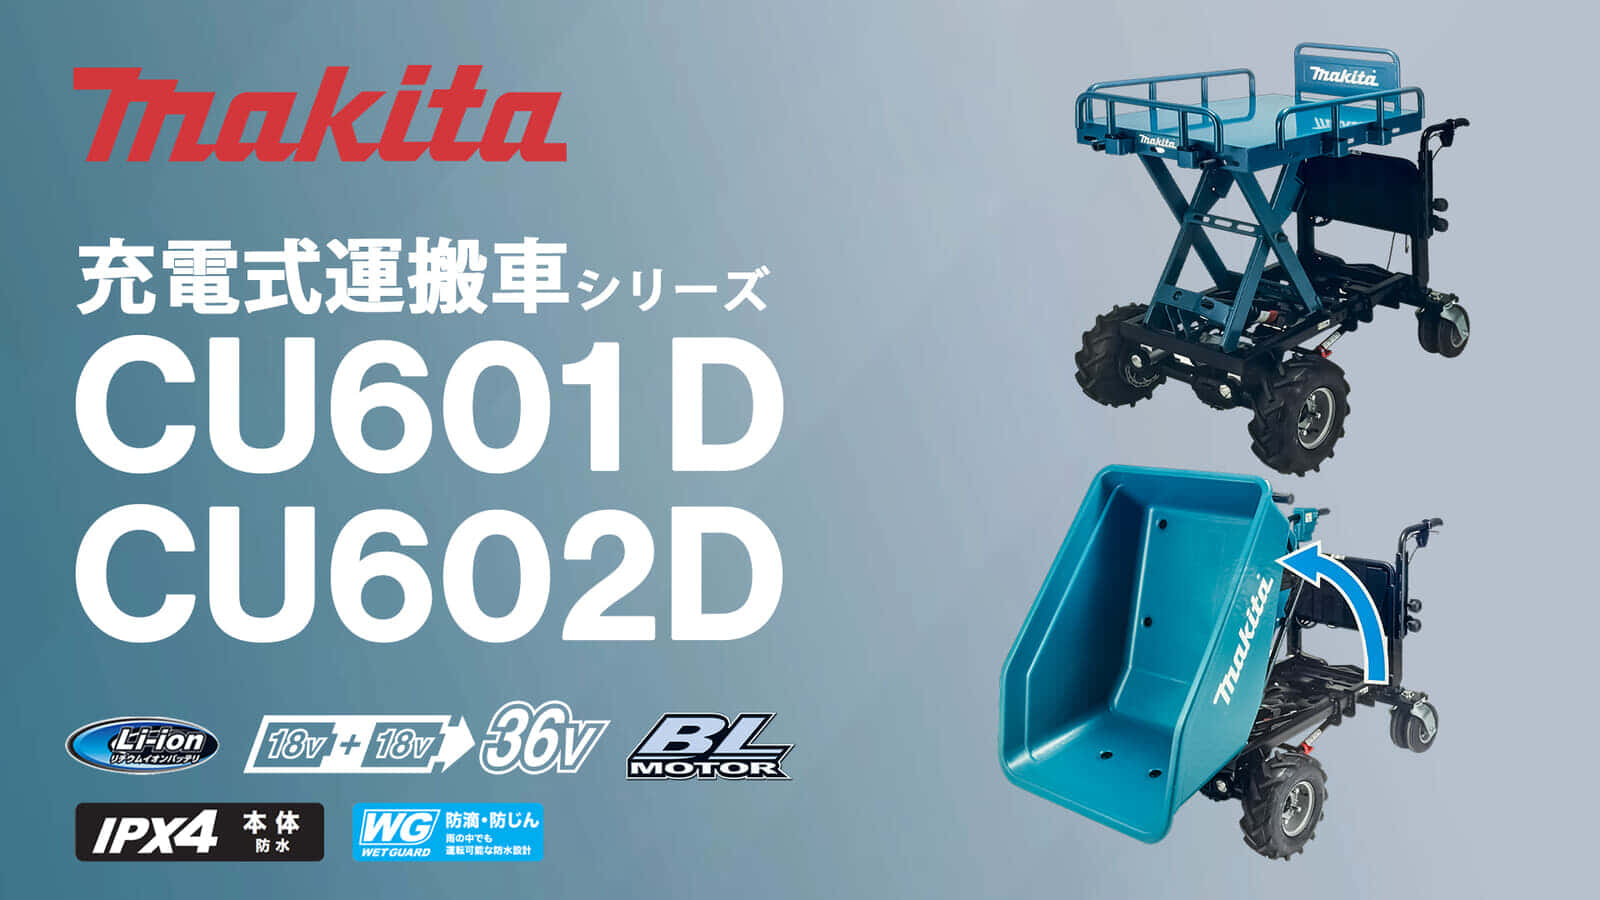 マキタ CU601D/CU602D 充電式運搬車を発売、油圧式の電動昇降タイプが登場